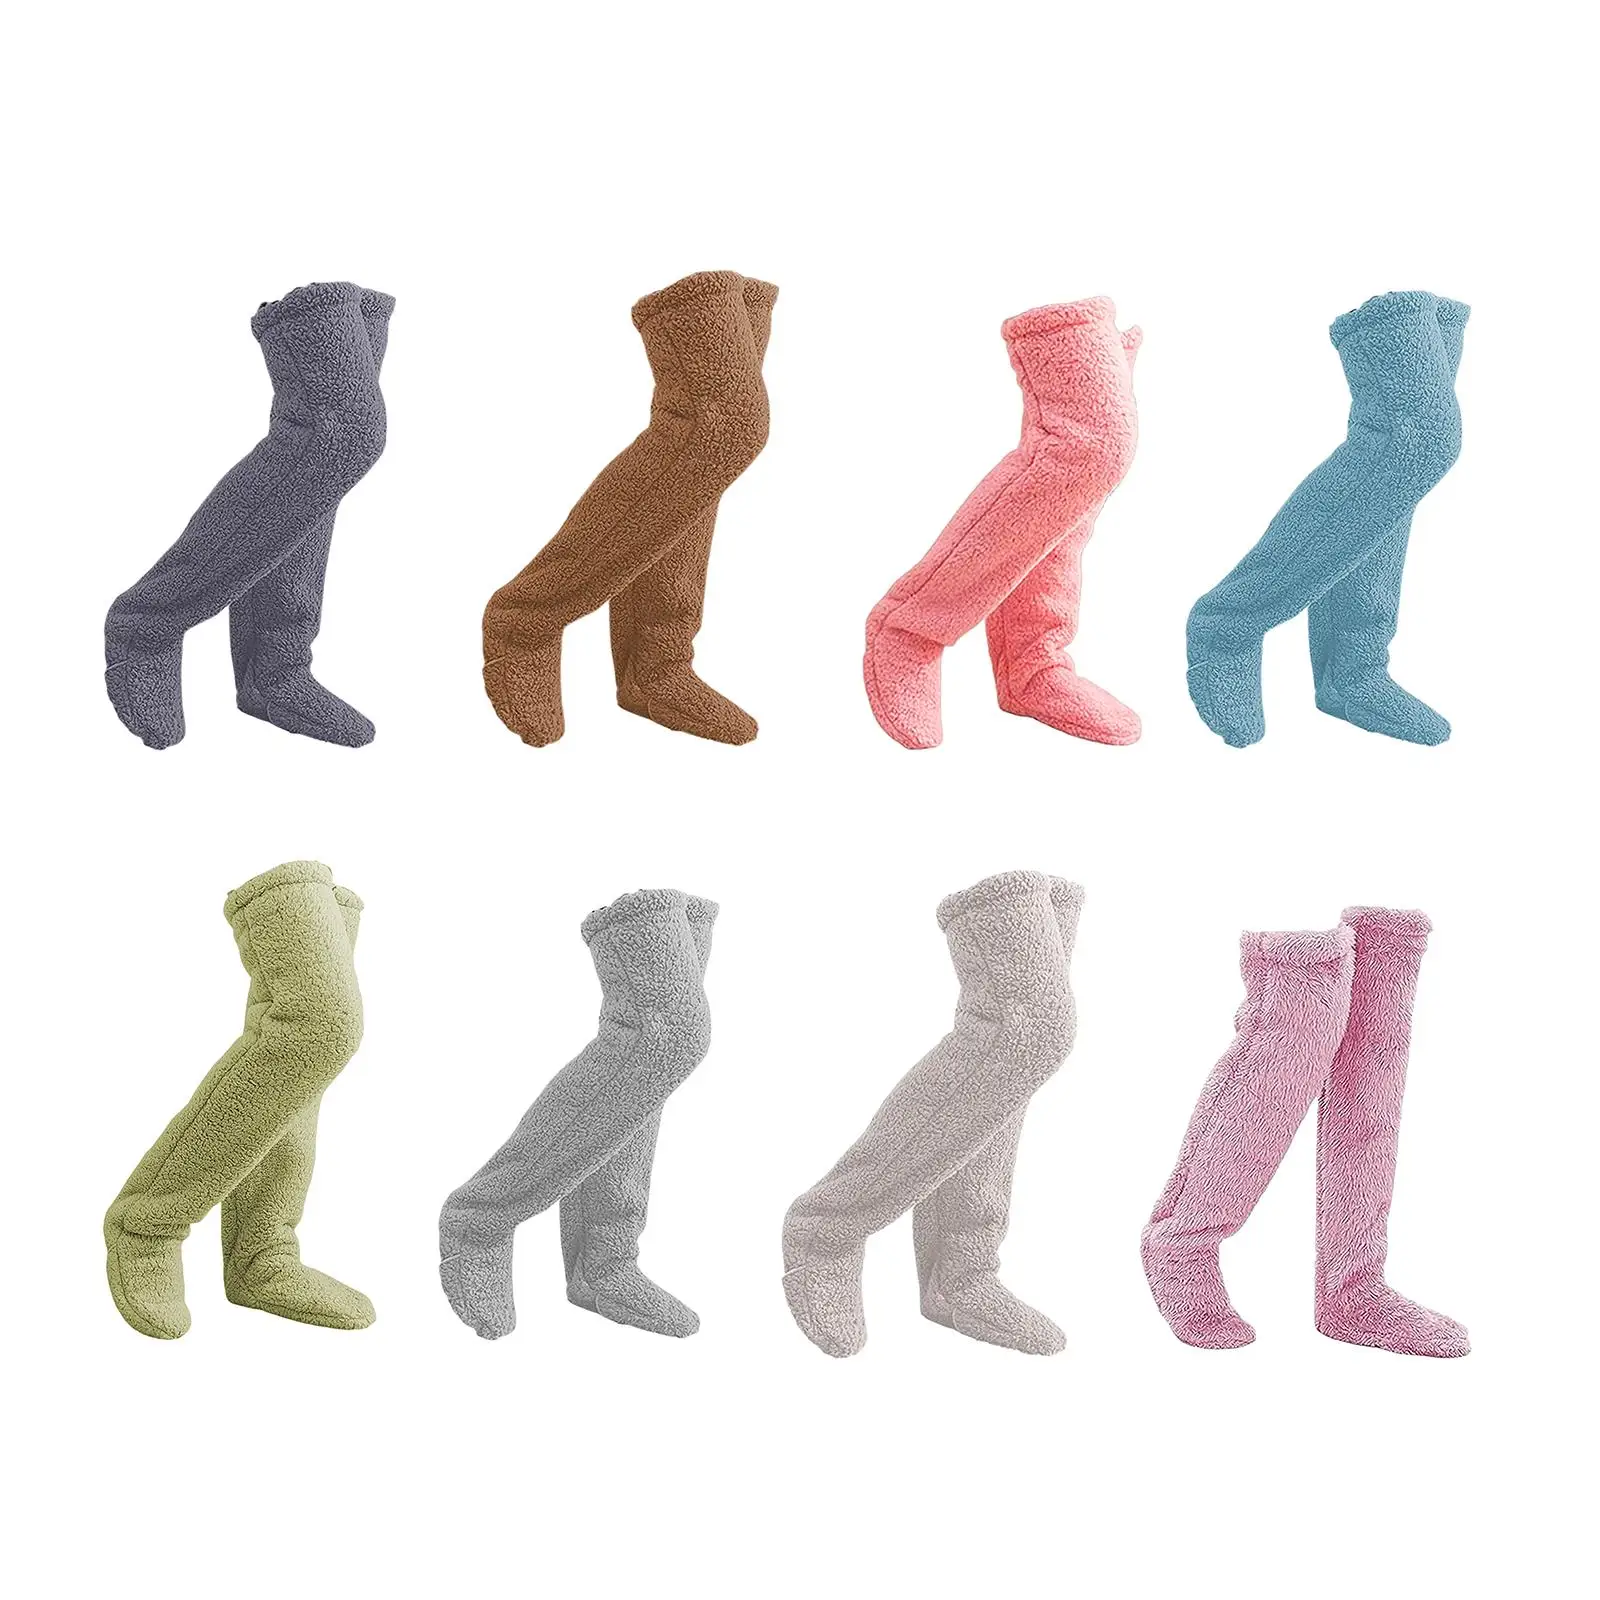 

Thigh High Socks Boot Socks Warm Thick Long Stocking Plush Leg Warmers Slipper Stockings Over Knee Fuzzy Socks for Bedroom Dorm